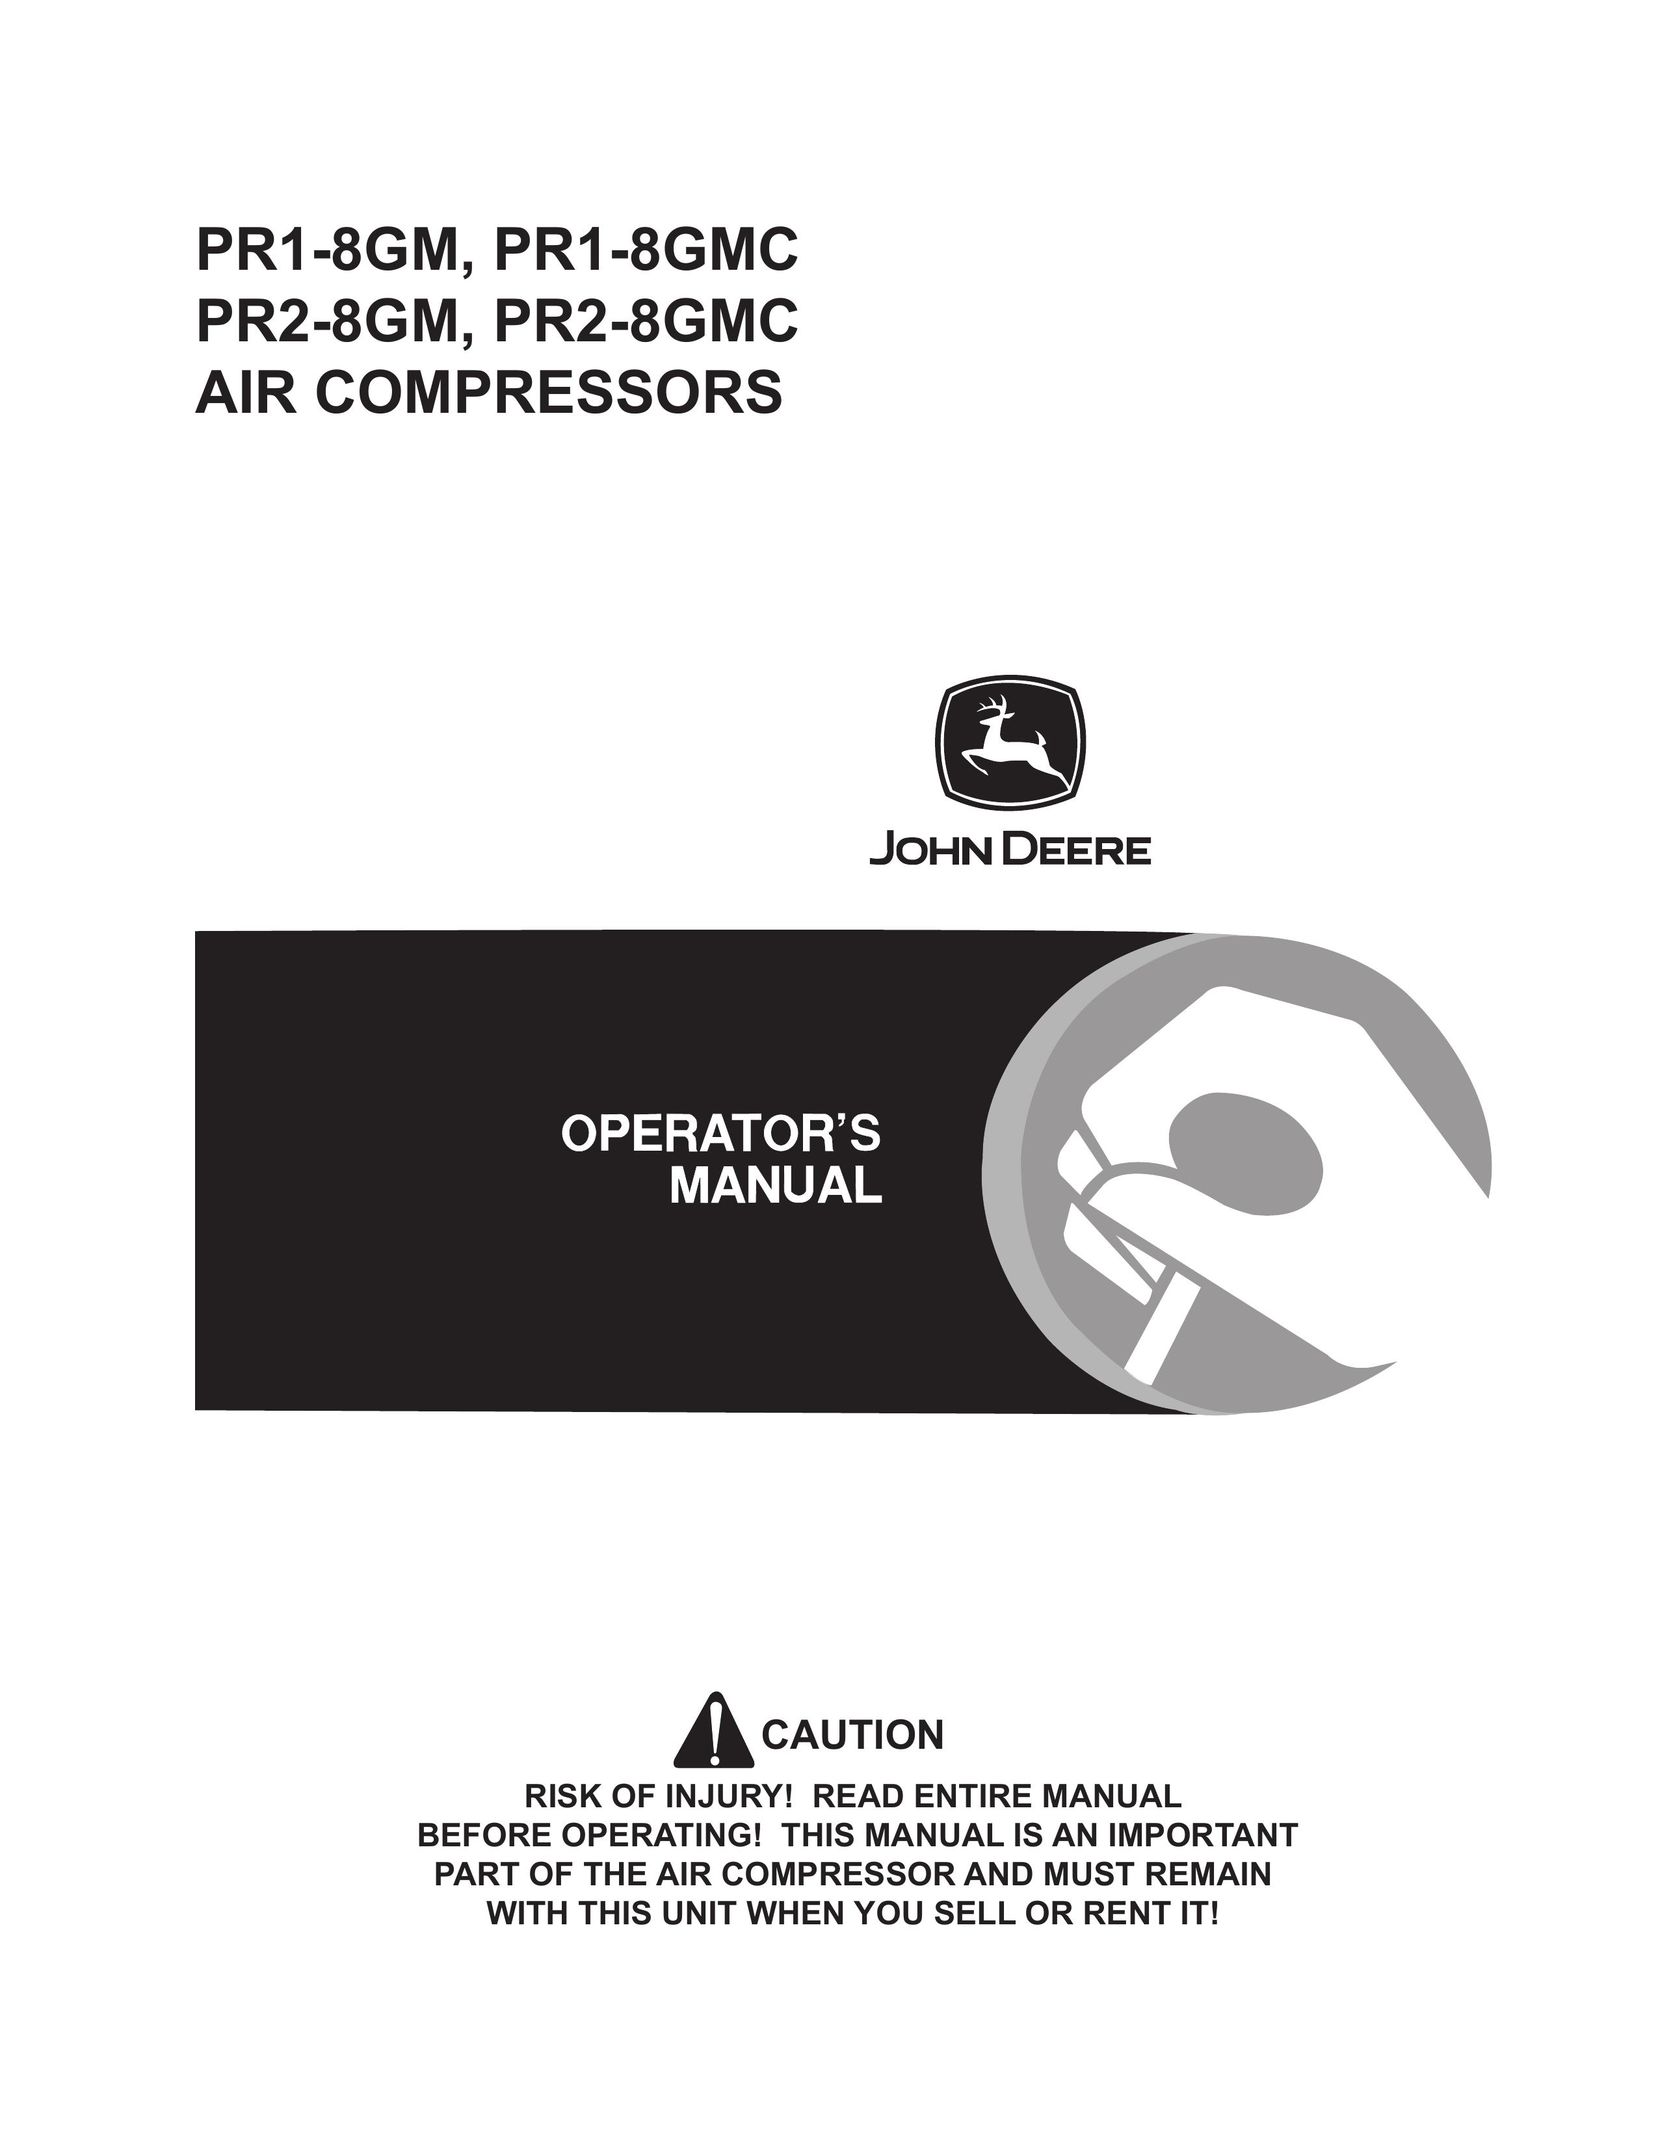 John Deere PR1-8GMC Air Compressor User Manual